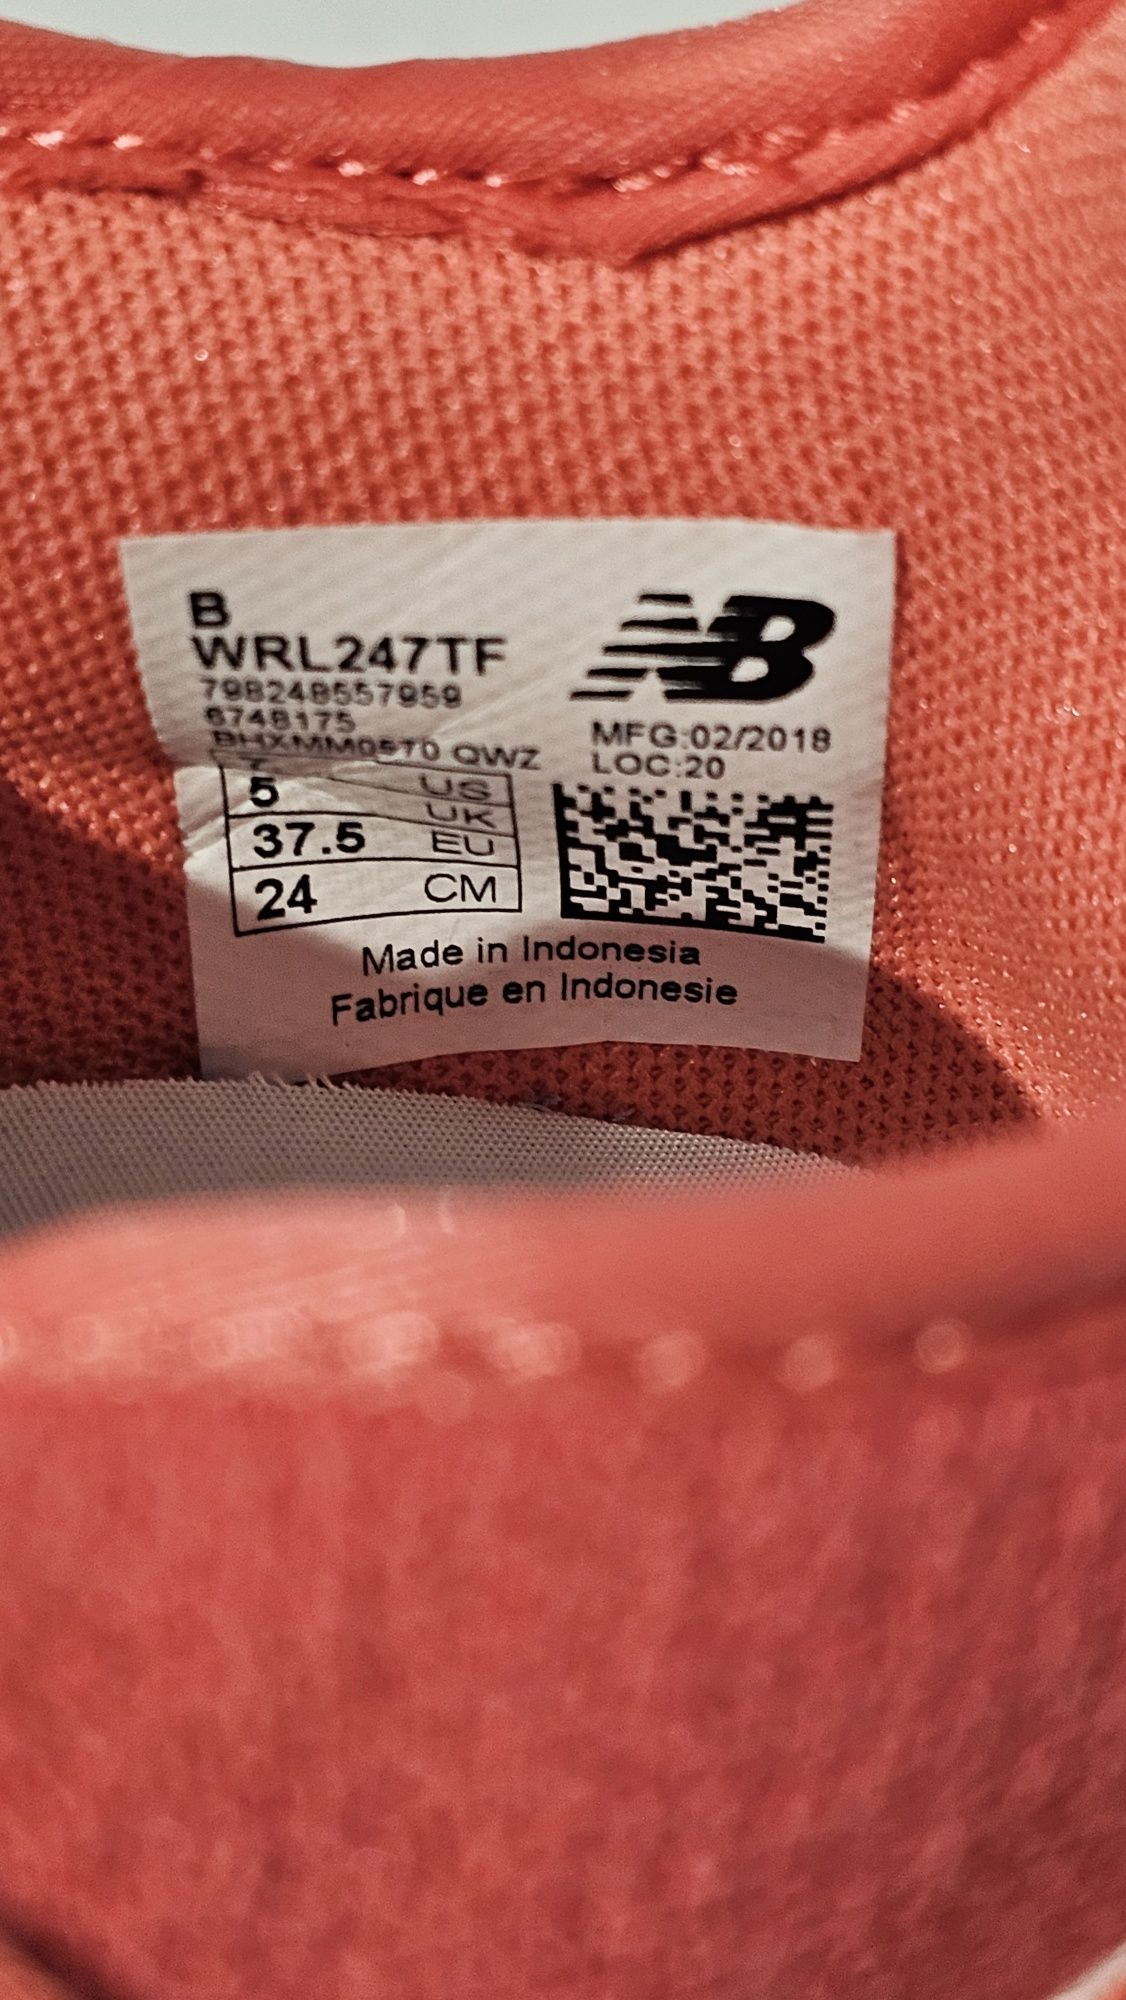 Buty damskie sportowe New Balance w opakowaniu fabrycznym rozmiar 37.5